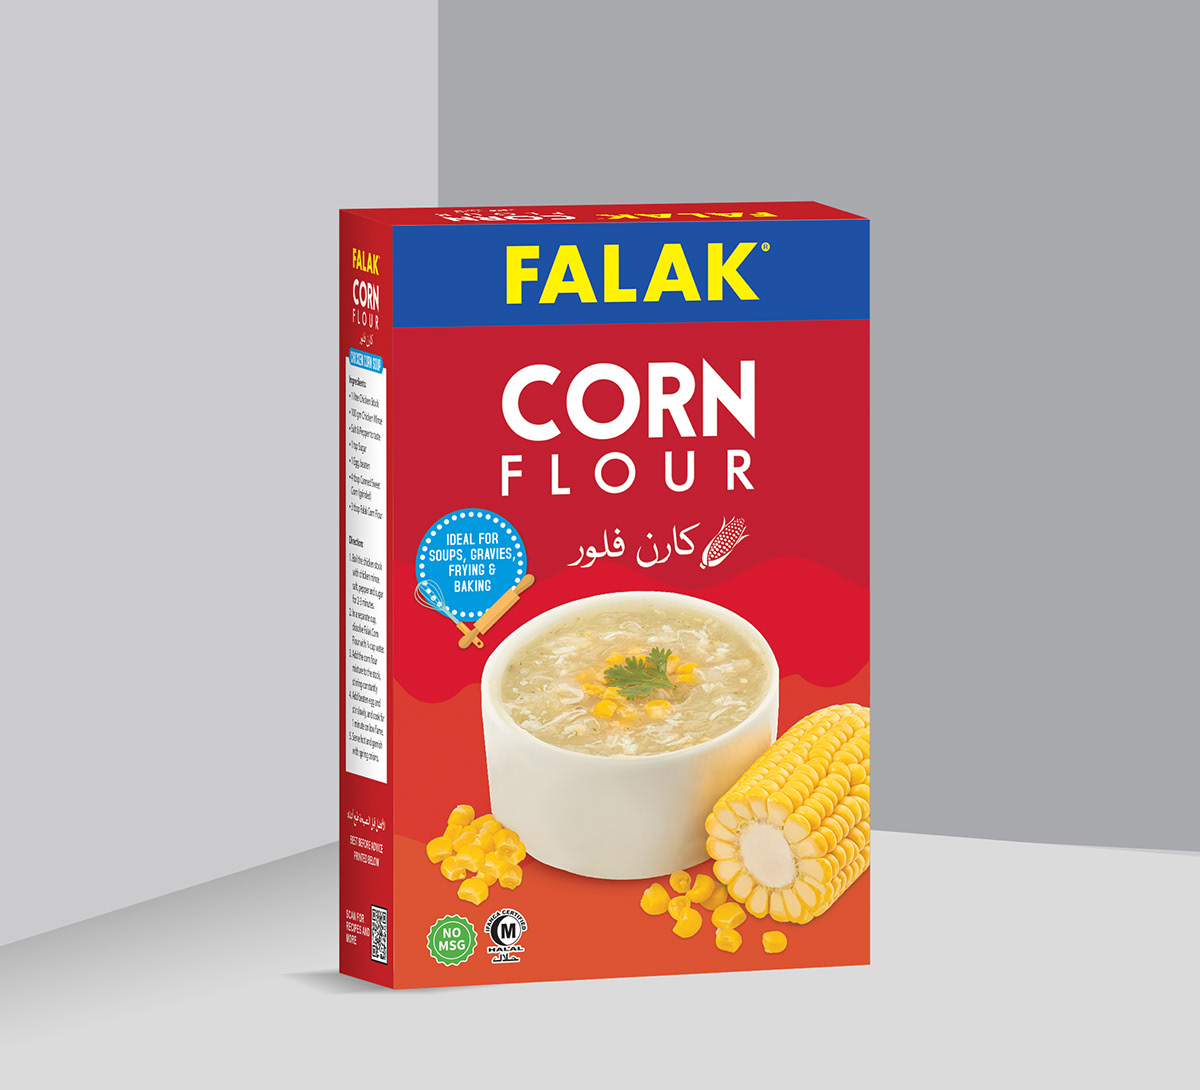 CORN Flour Packaging packaging design Brand Design packaging mockup Mockup Corn Flour packaging Falak Corn Flour